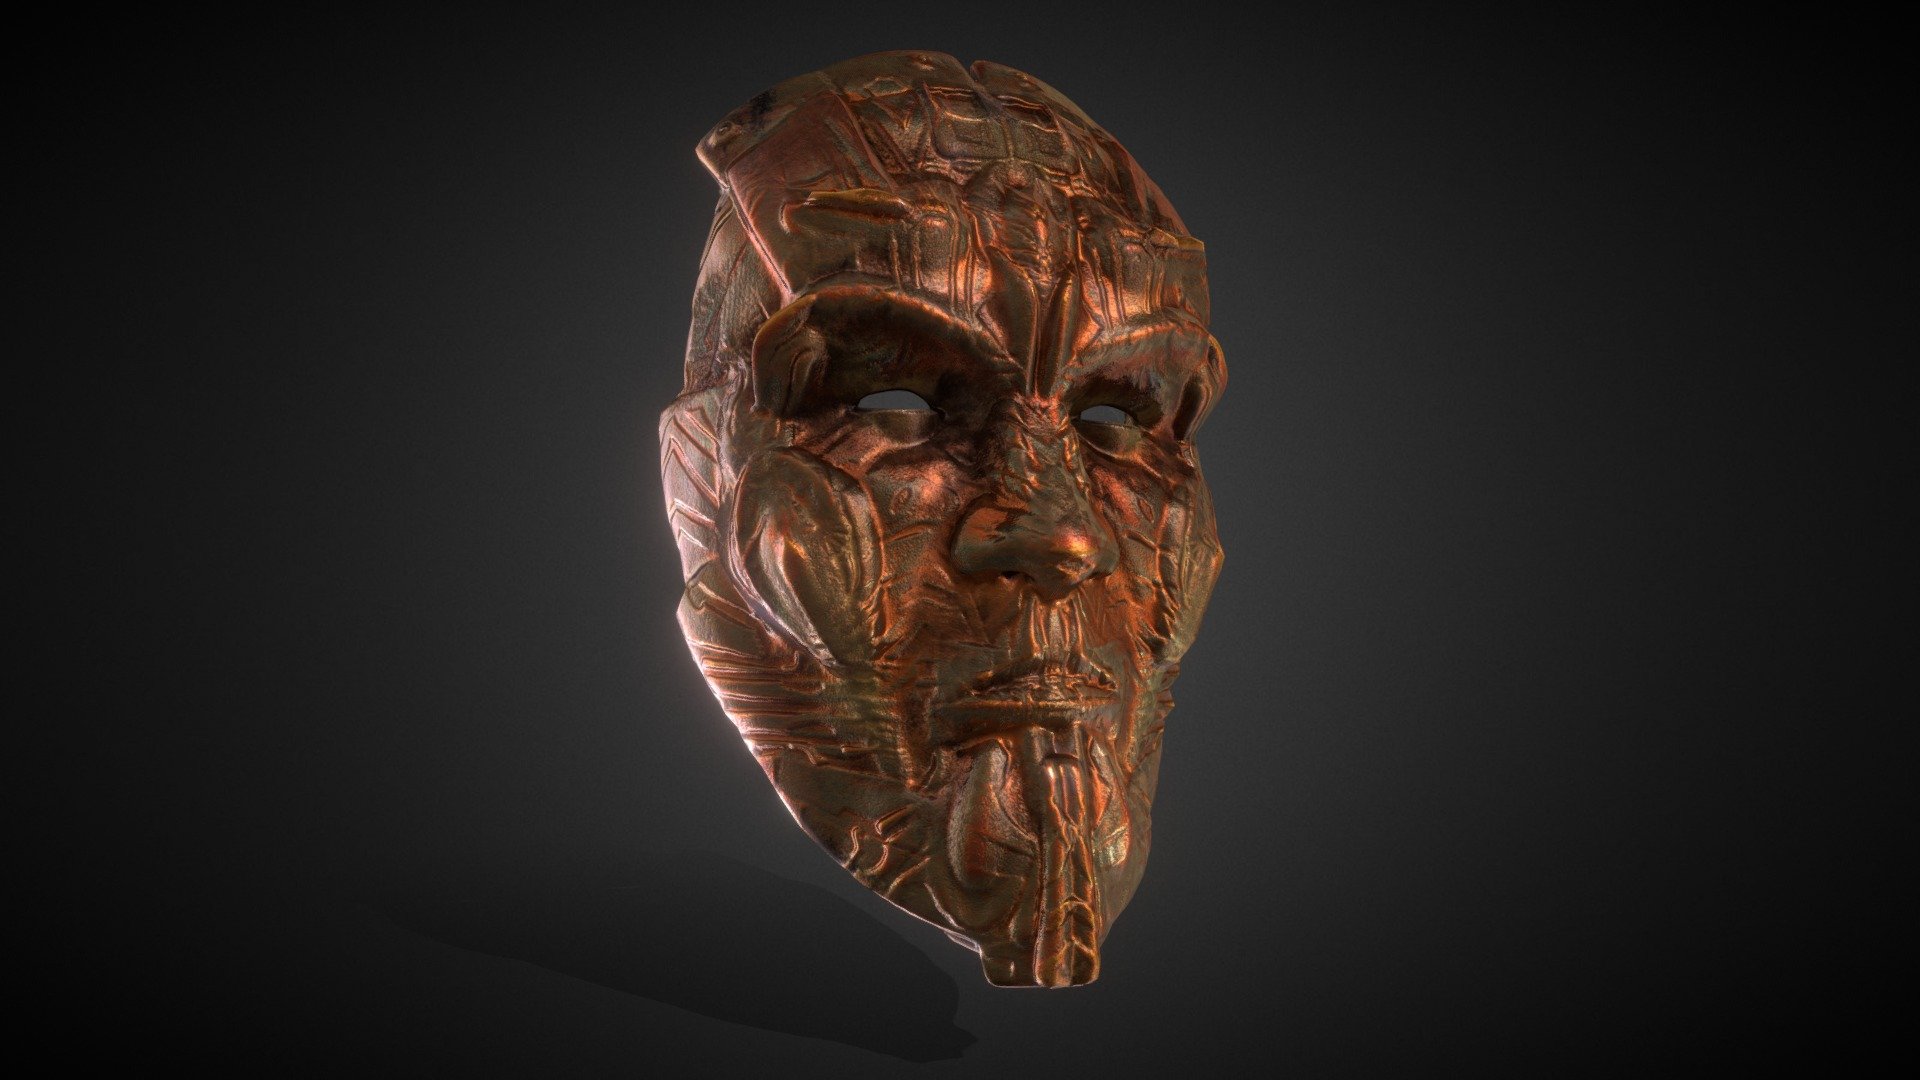 Ancient Cyberman Warrior Mask - Buy Royalty Free 3D model by Glen Johnson (@plasticarm) 3d model